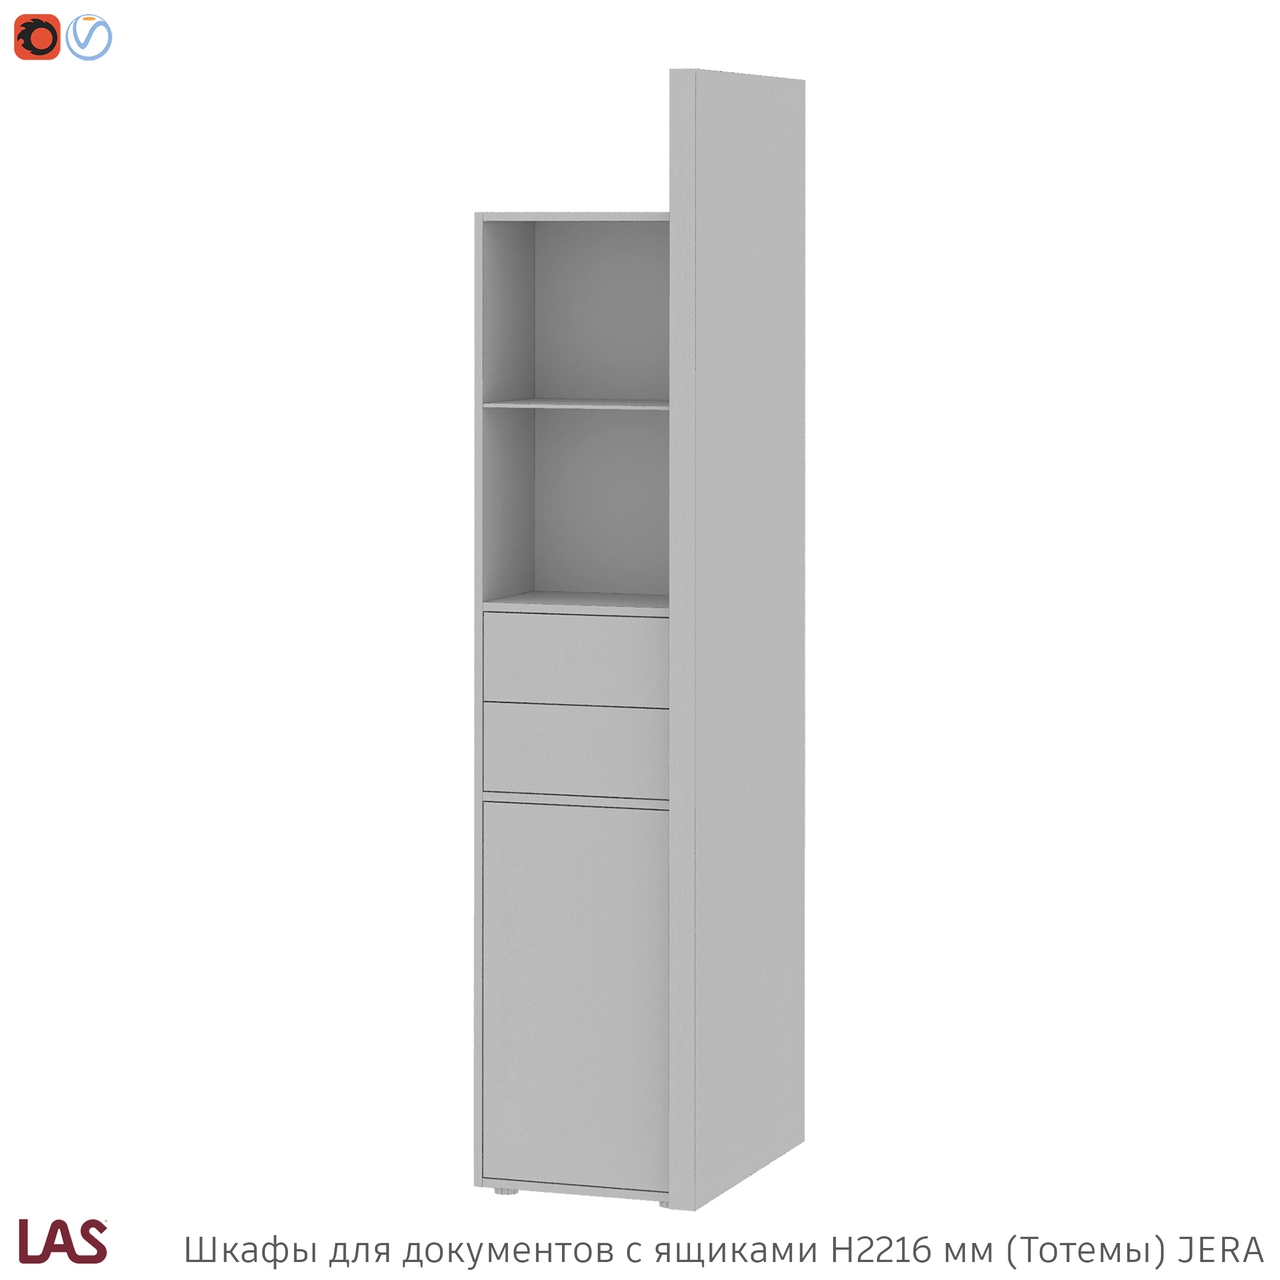 Превью G 3D-модели тотемных шкафов с ящиками для кабинета LAS Jera 159966